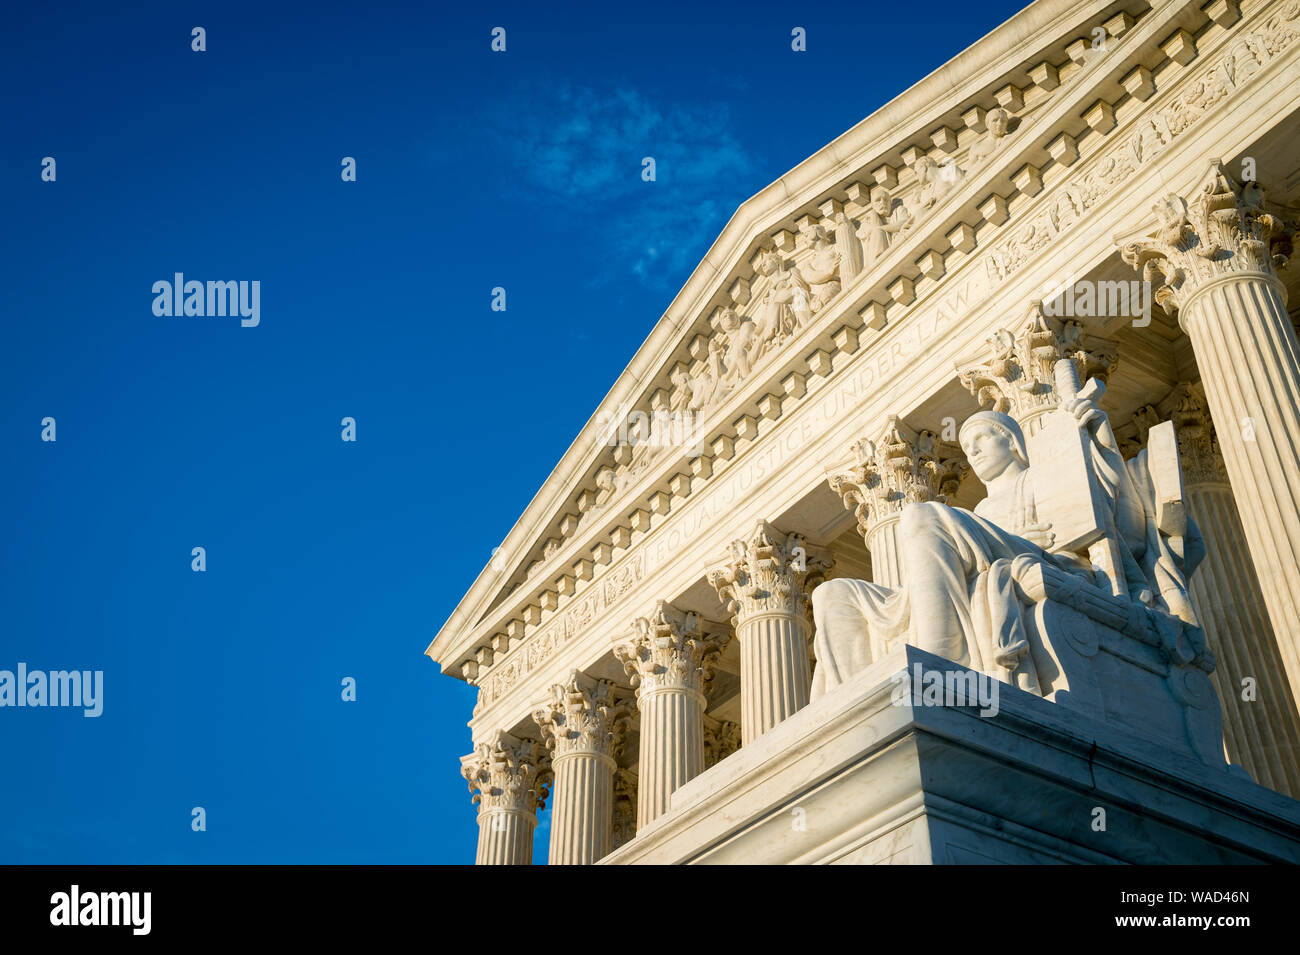 Scenic pomeriggio veduta della facciata della Corte suprema degli Stati Uniti edificio con tramonto dorato di luce che cade su classiche colonne corinzie Foto Stock